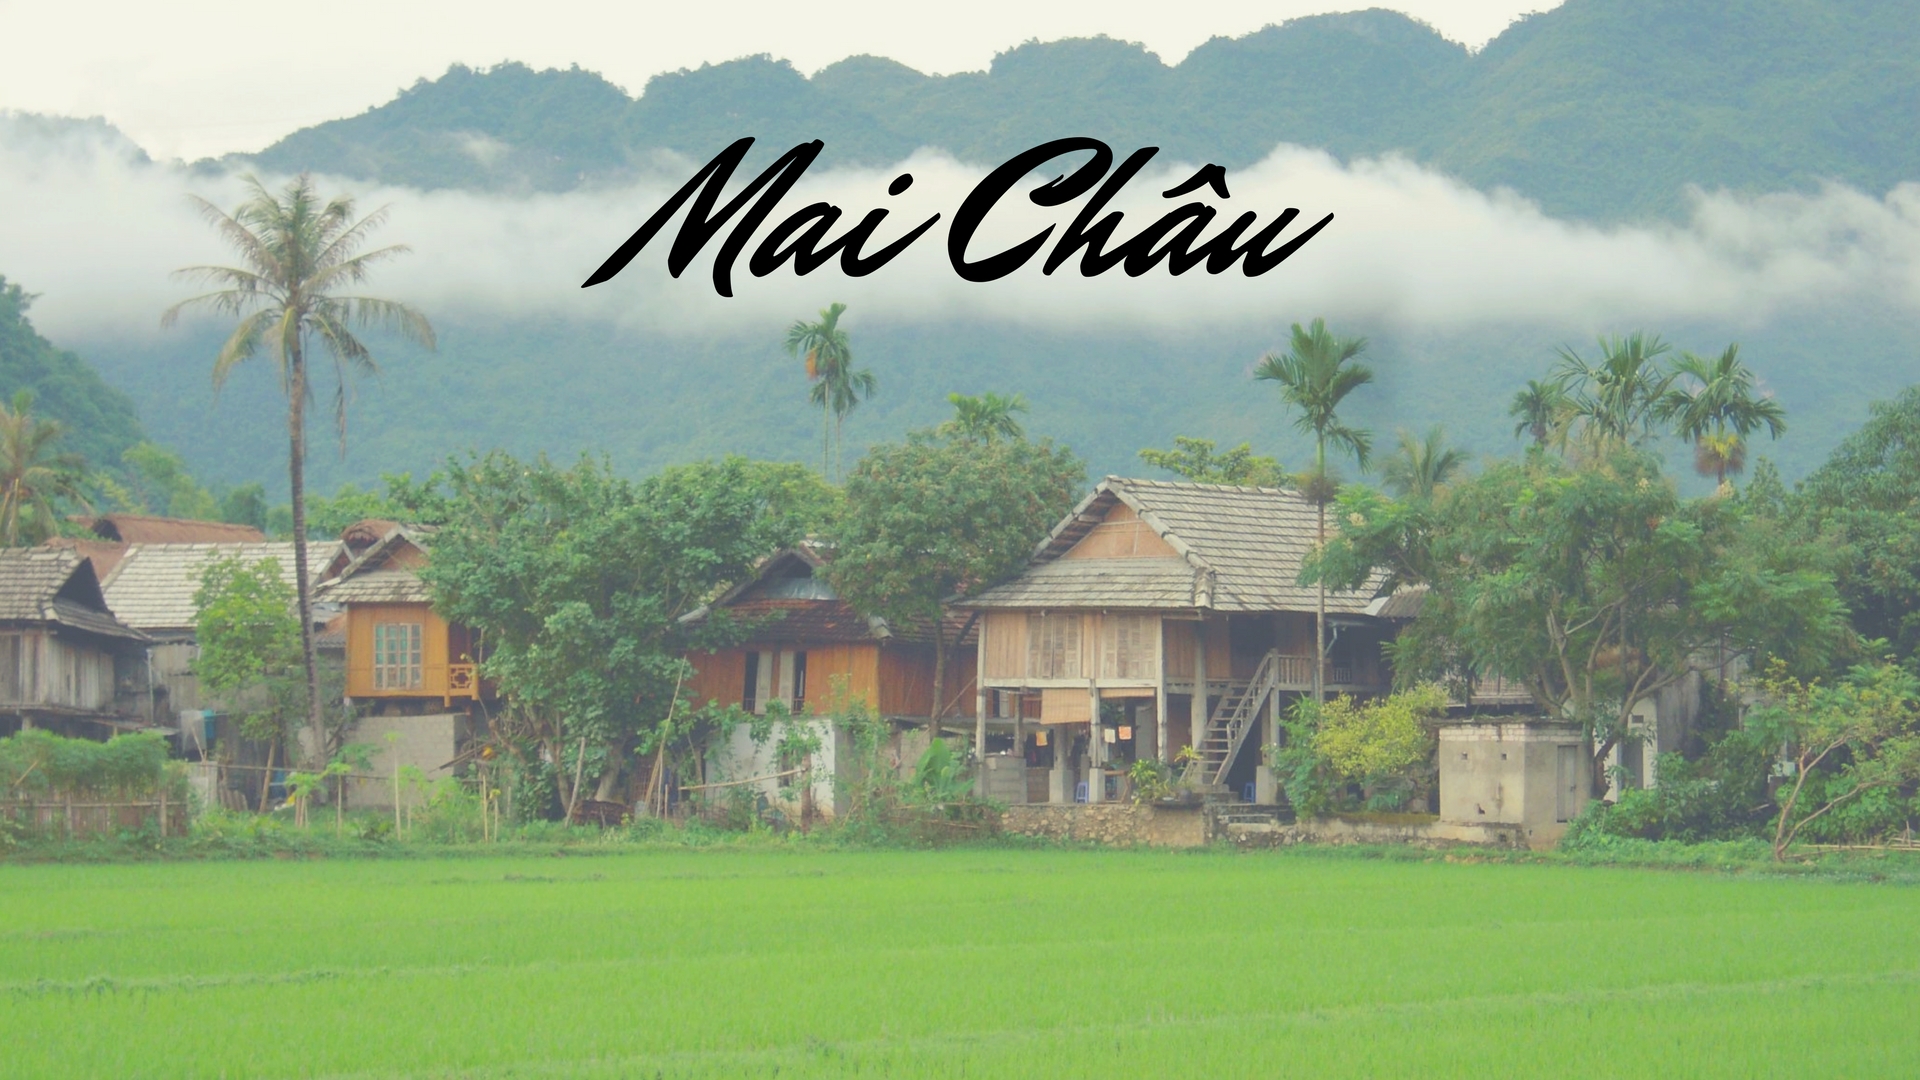 Mai Chau